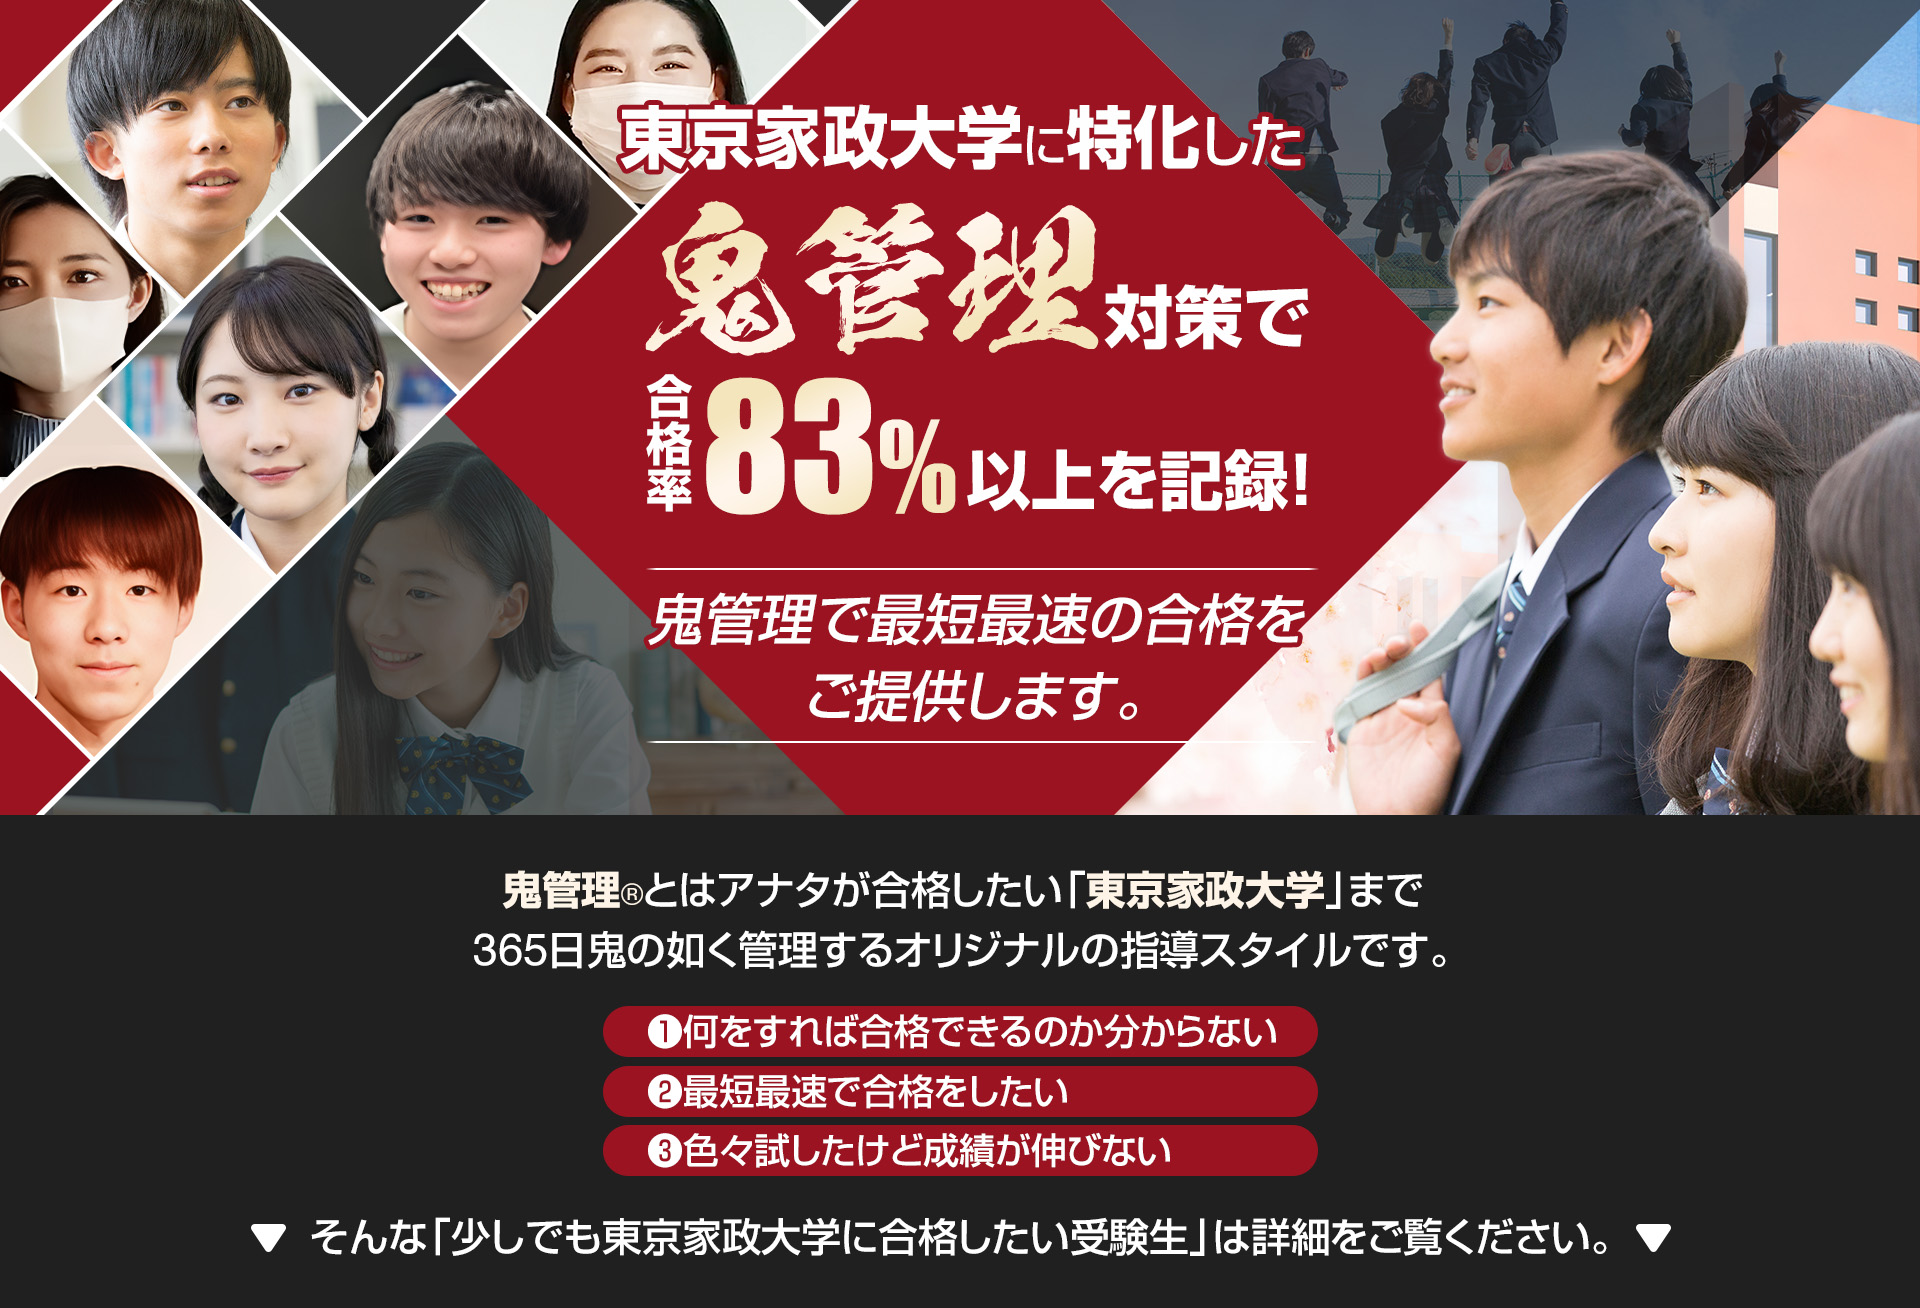 東京家政大学に特化した鬼管理対策で合格率83％以上を記録。鬼管理でアナタが合格したい東京家政大学への最短最速の合格を提供します。